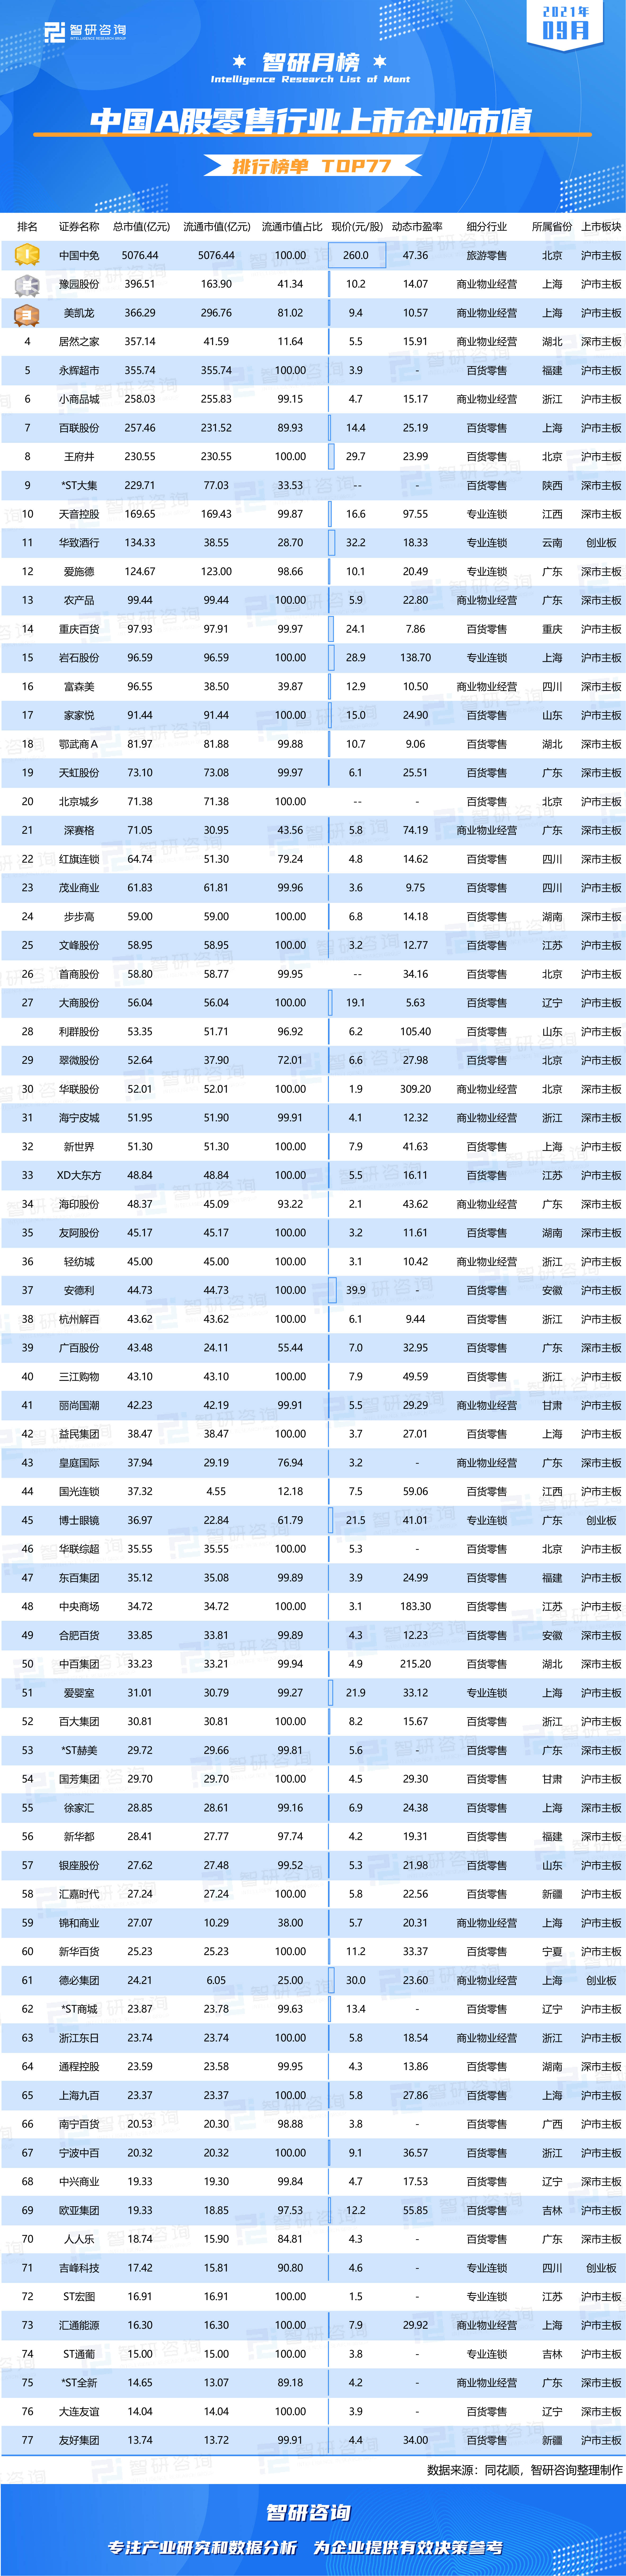 国内市值排行_2021年10月中国A股种植业与林业上市企业市值排行榜:隆平高科位居...(2)